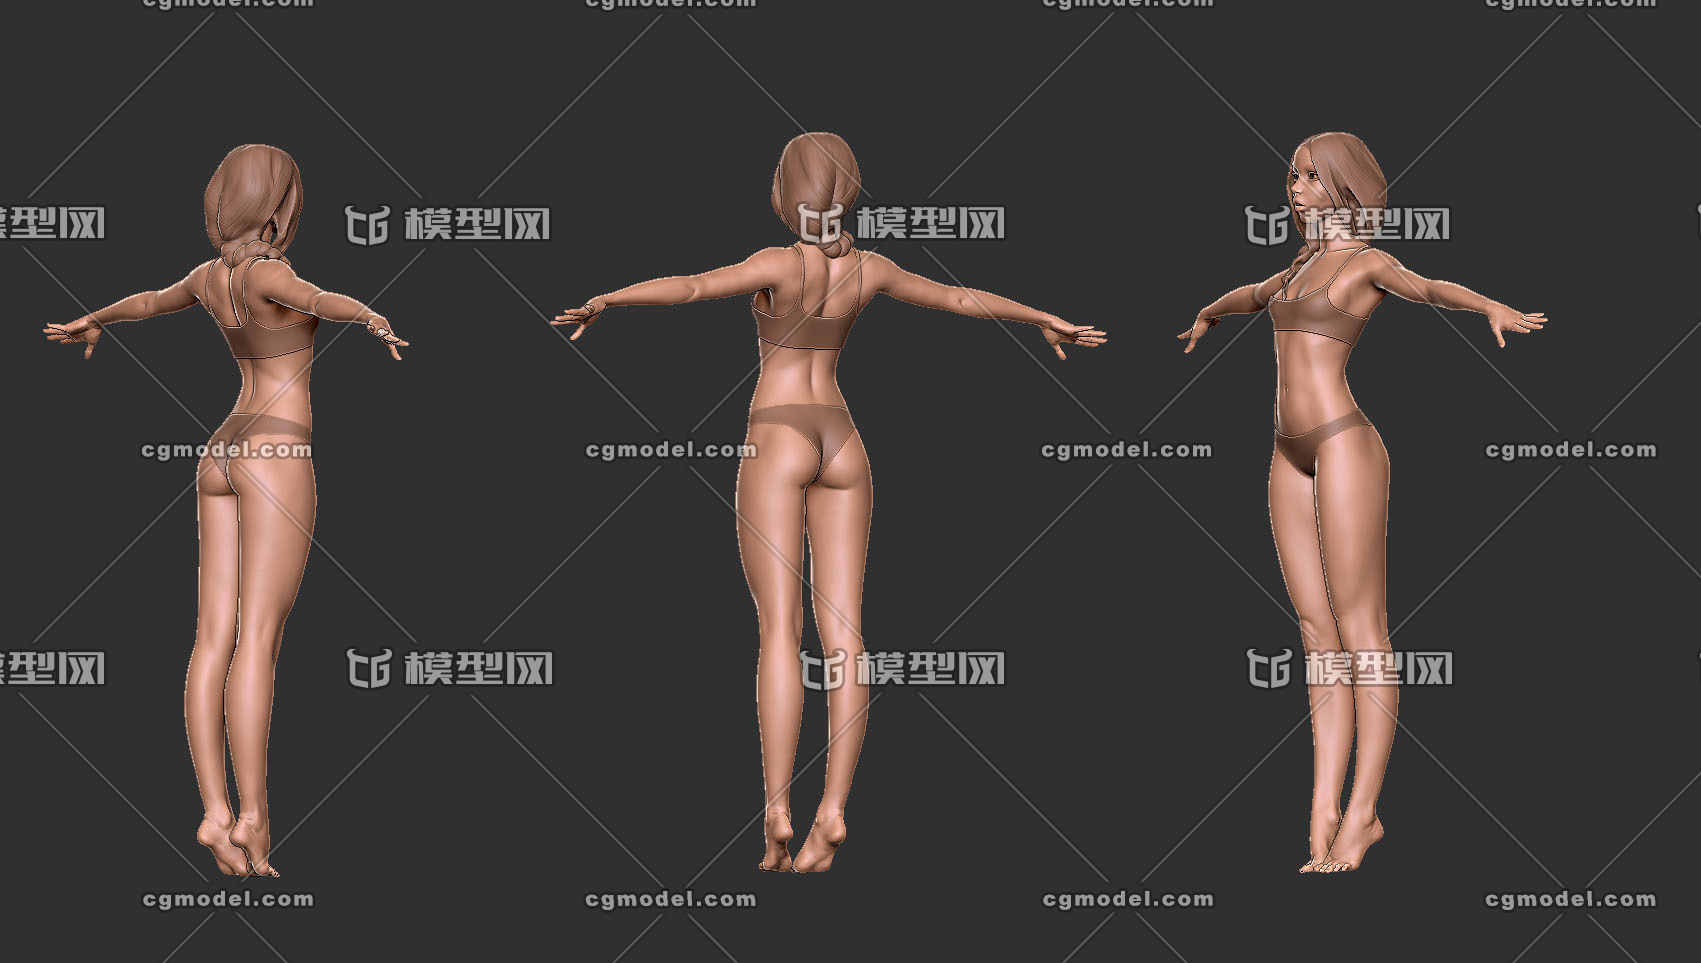 基础人体模型裸模女裸模青年女人女人体标准模型年轻 女人体艺用女性裸 模人体建模参考 Cg模型网 Cgmodel 三维设计师交流互动平台 专注多品类3d模型下载 原创作品分享 软件学习